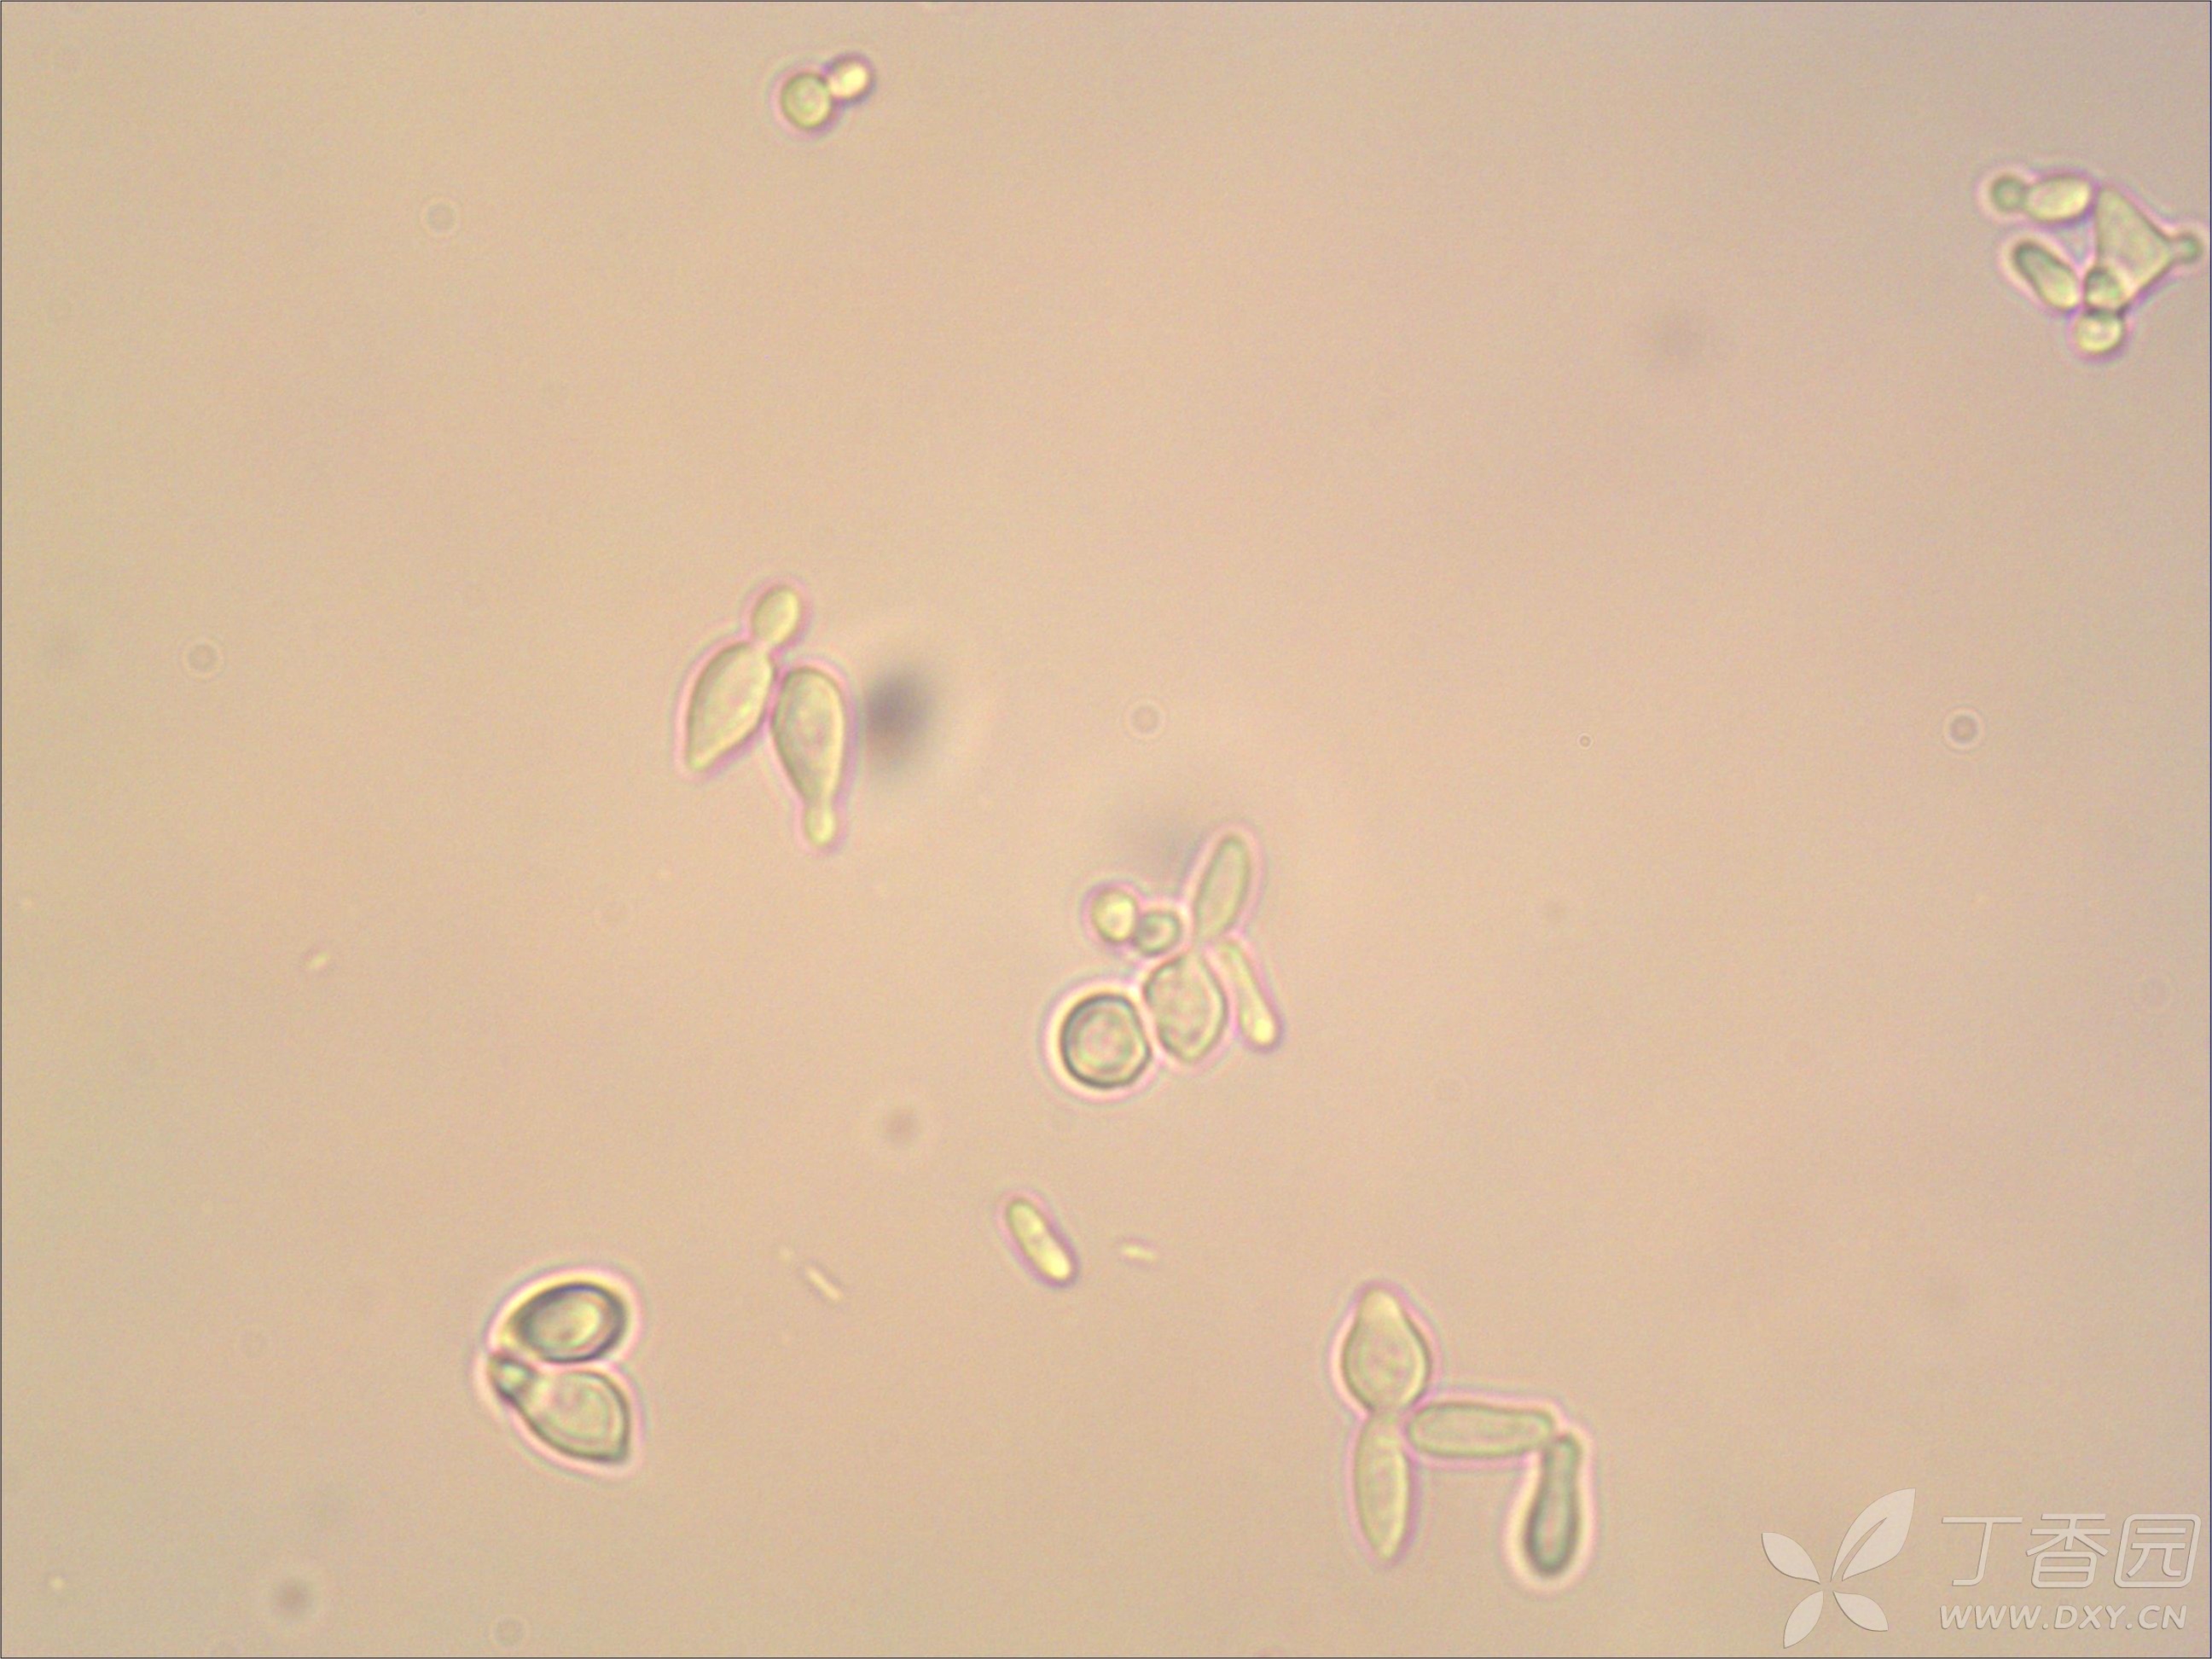 尿检酵母样菌图片